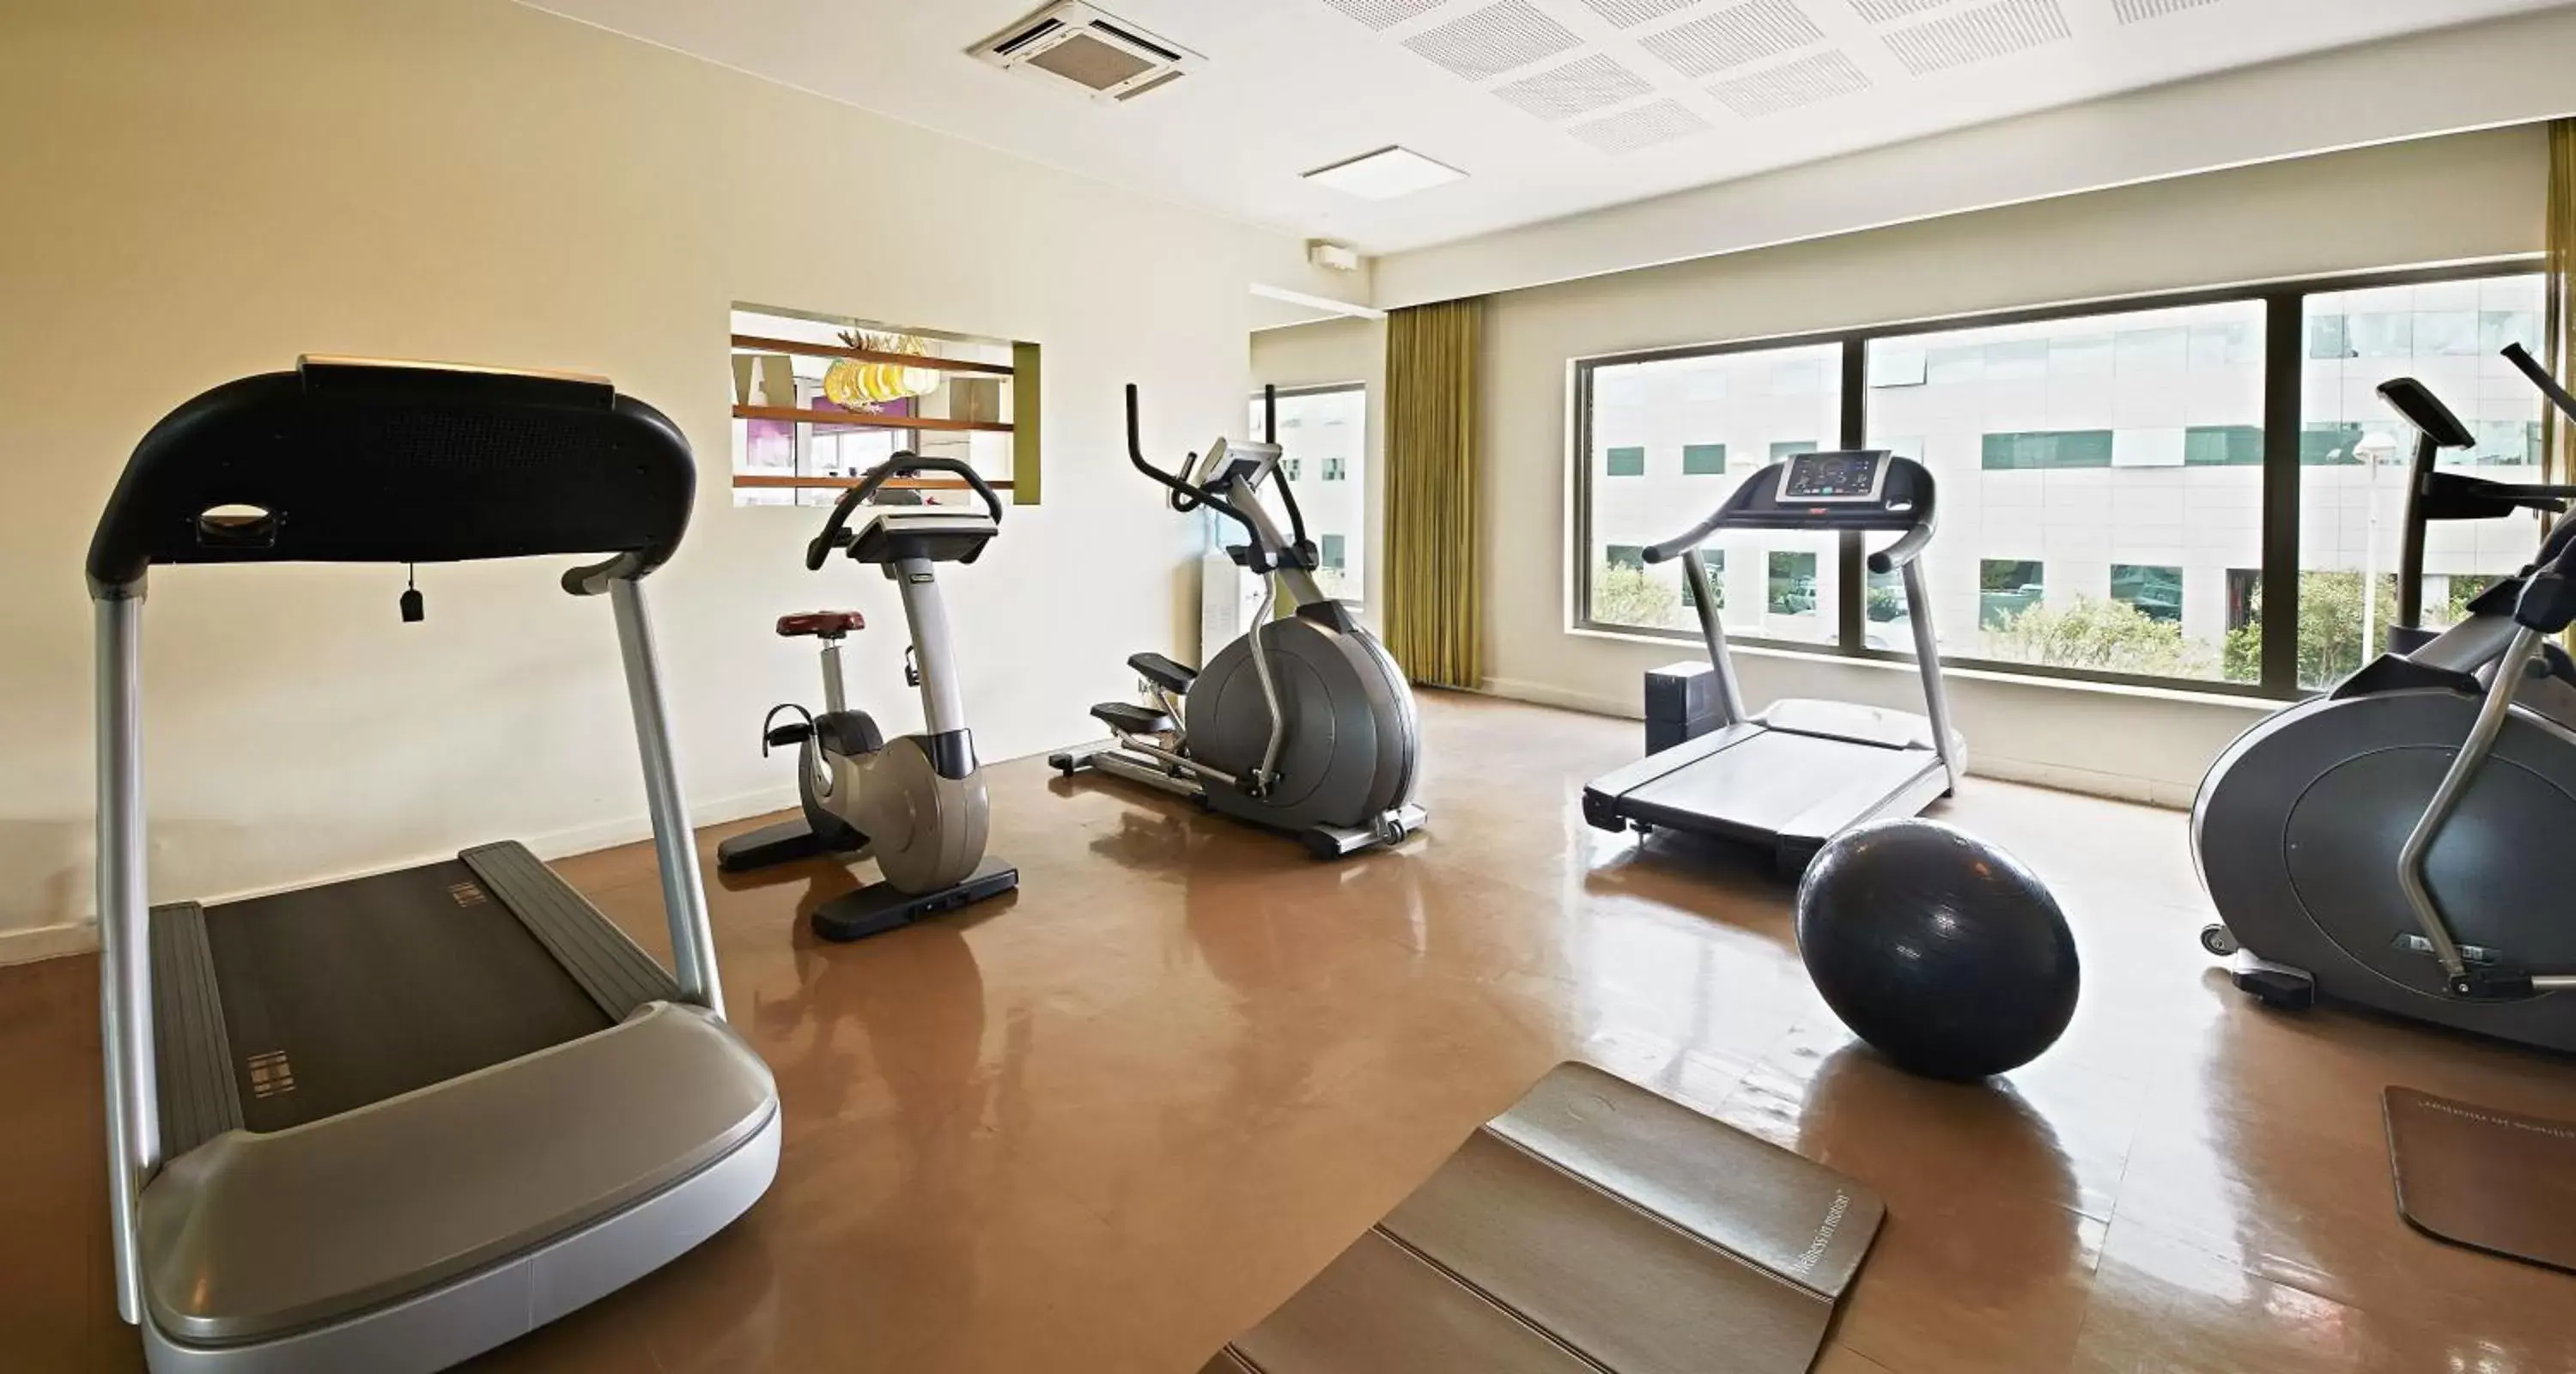 Spa and wellness centre/facilities, Fitness Center/Facilities in Ibis Antananarivo Ankorondrano